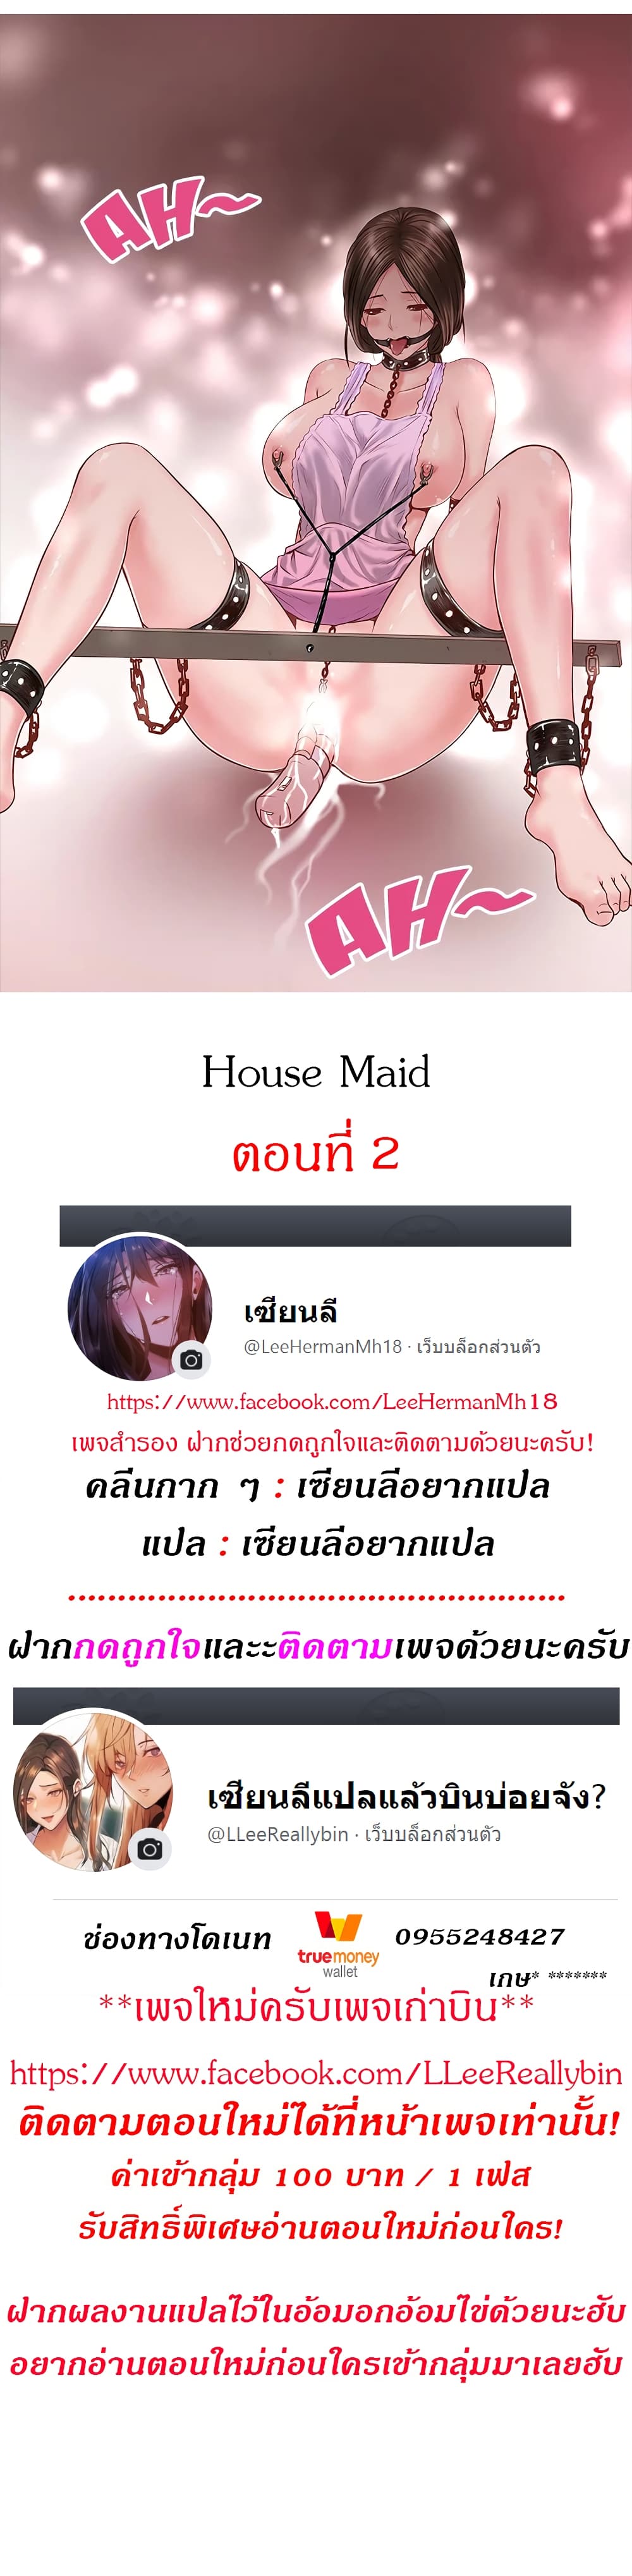 House Maid 2 01